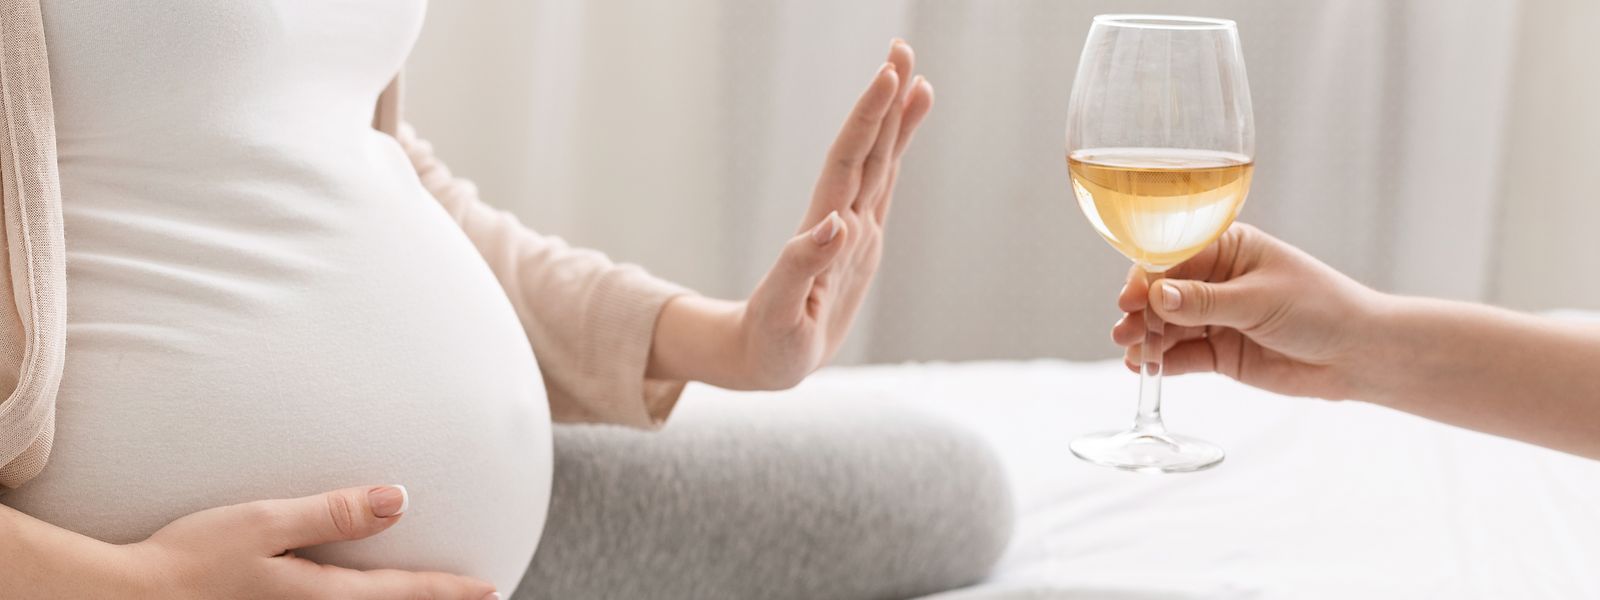 Während der Schwangerschaft sollte auf jeglichen Alkoholkonsum verzichtet werden.